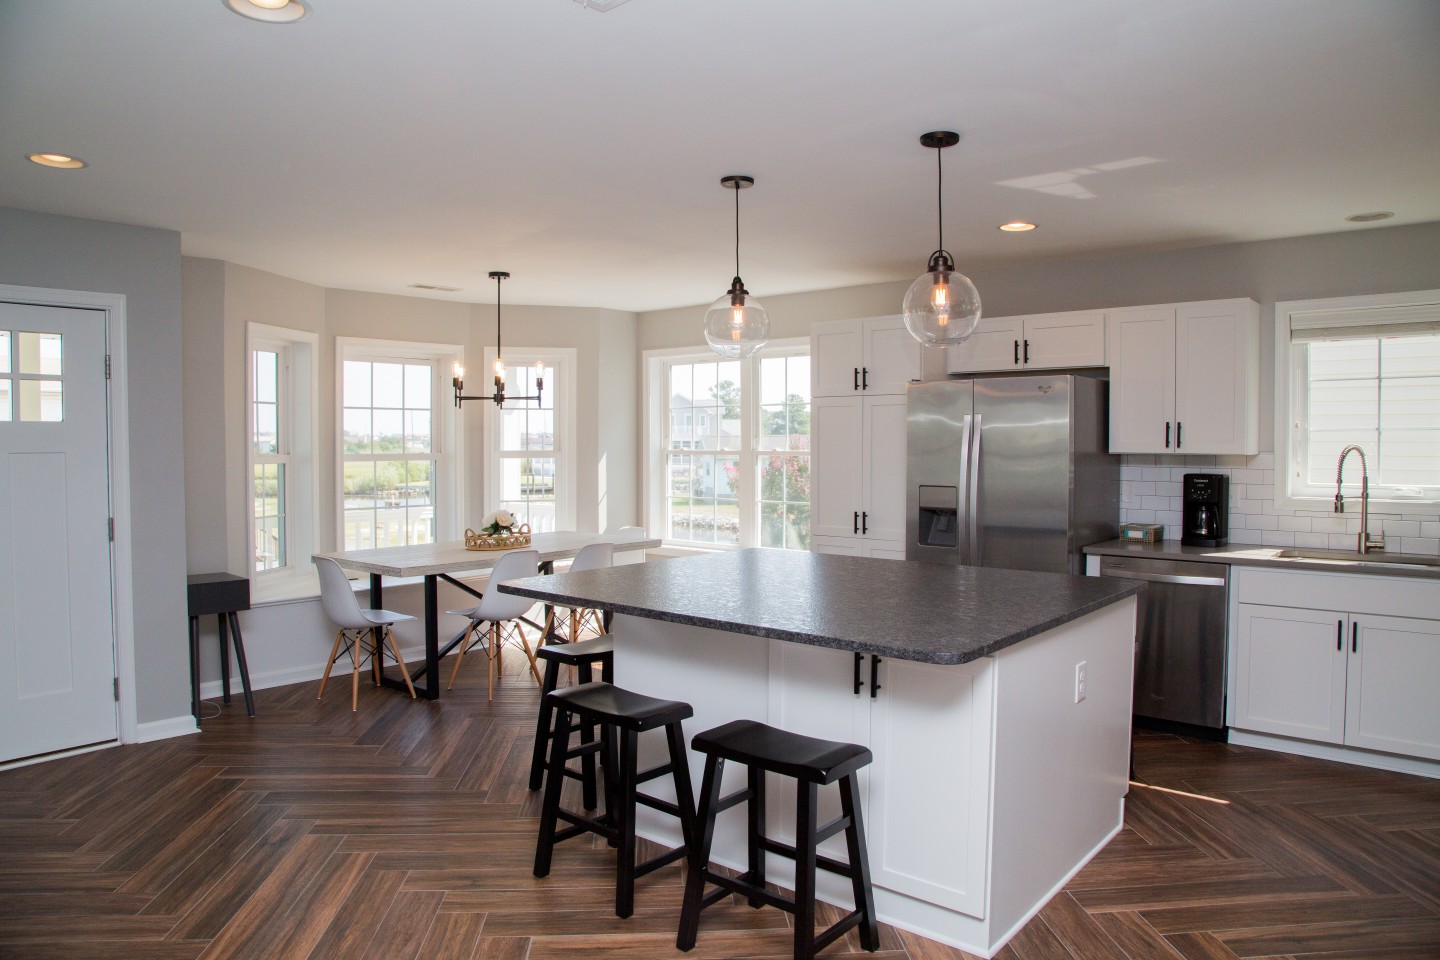 Kitchen Renovation with Hardwood Flooring, Large Windows and White Tile Backsplash